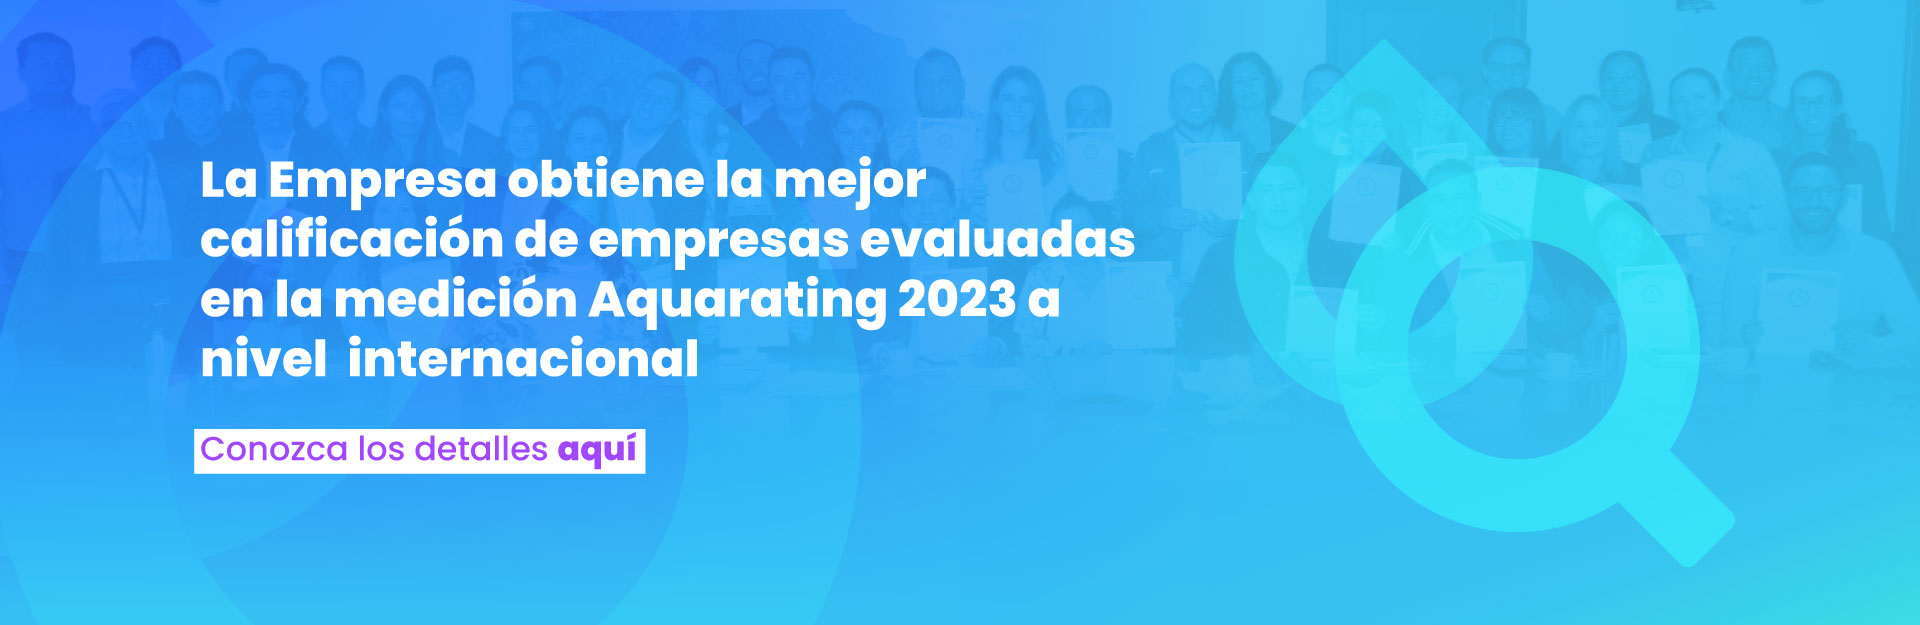 EAAB - ESP obtiene la mejor calificación de empresas evaluadas en la medición Aquarating 2023 a nivel internacional